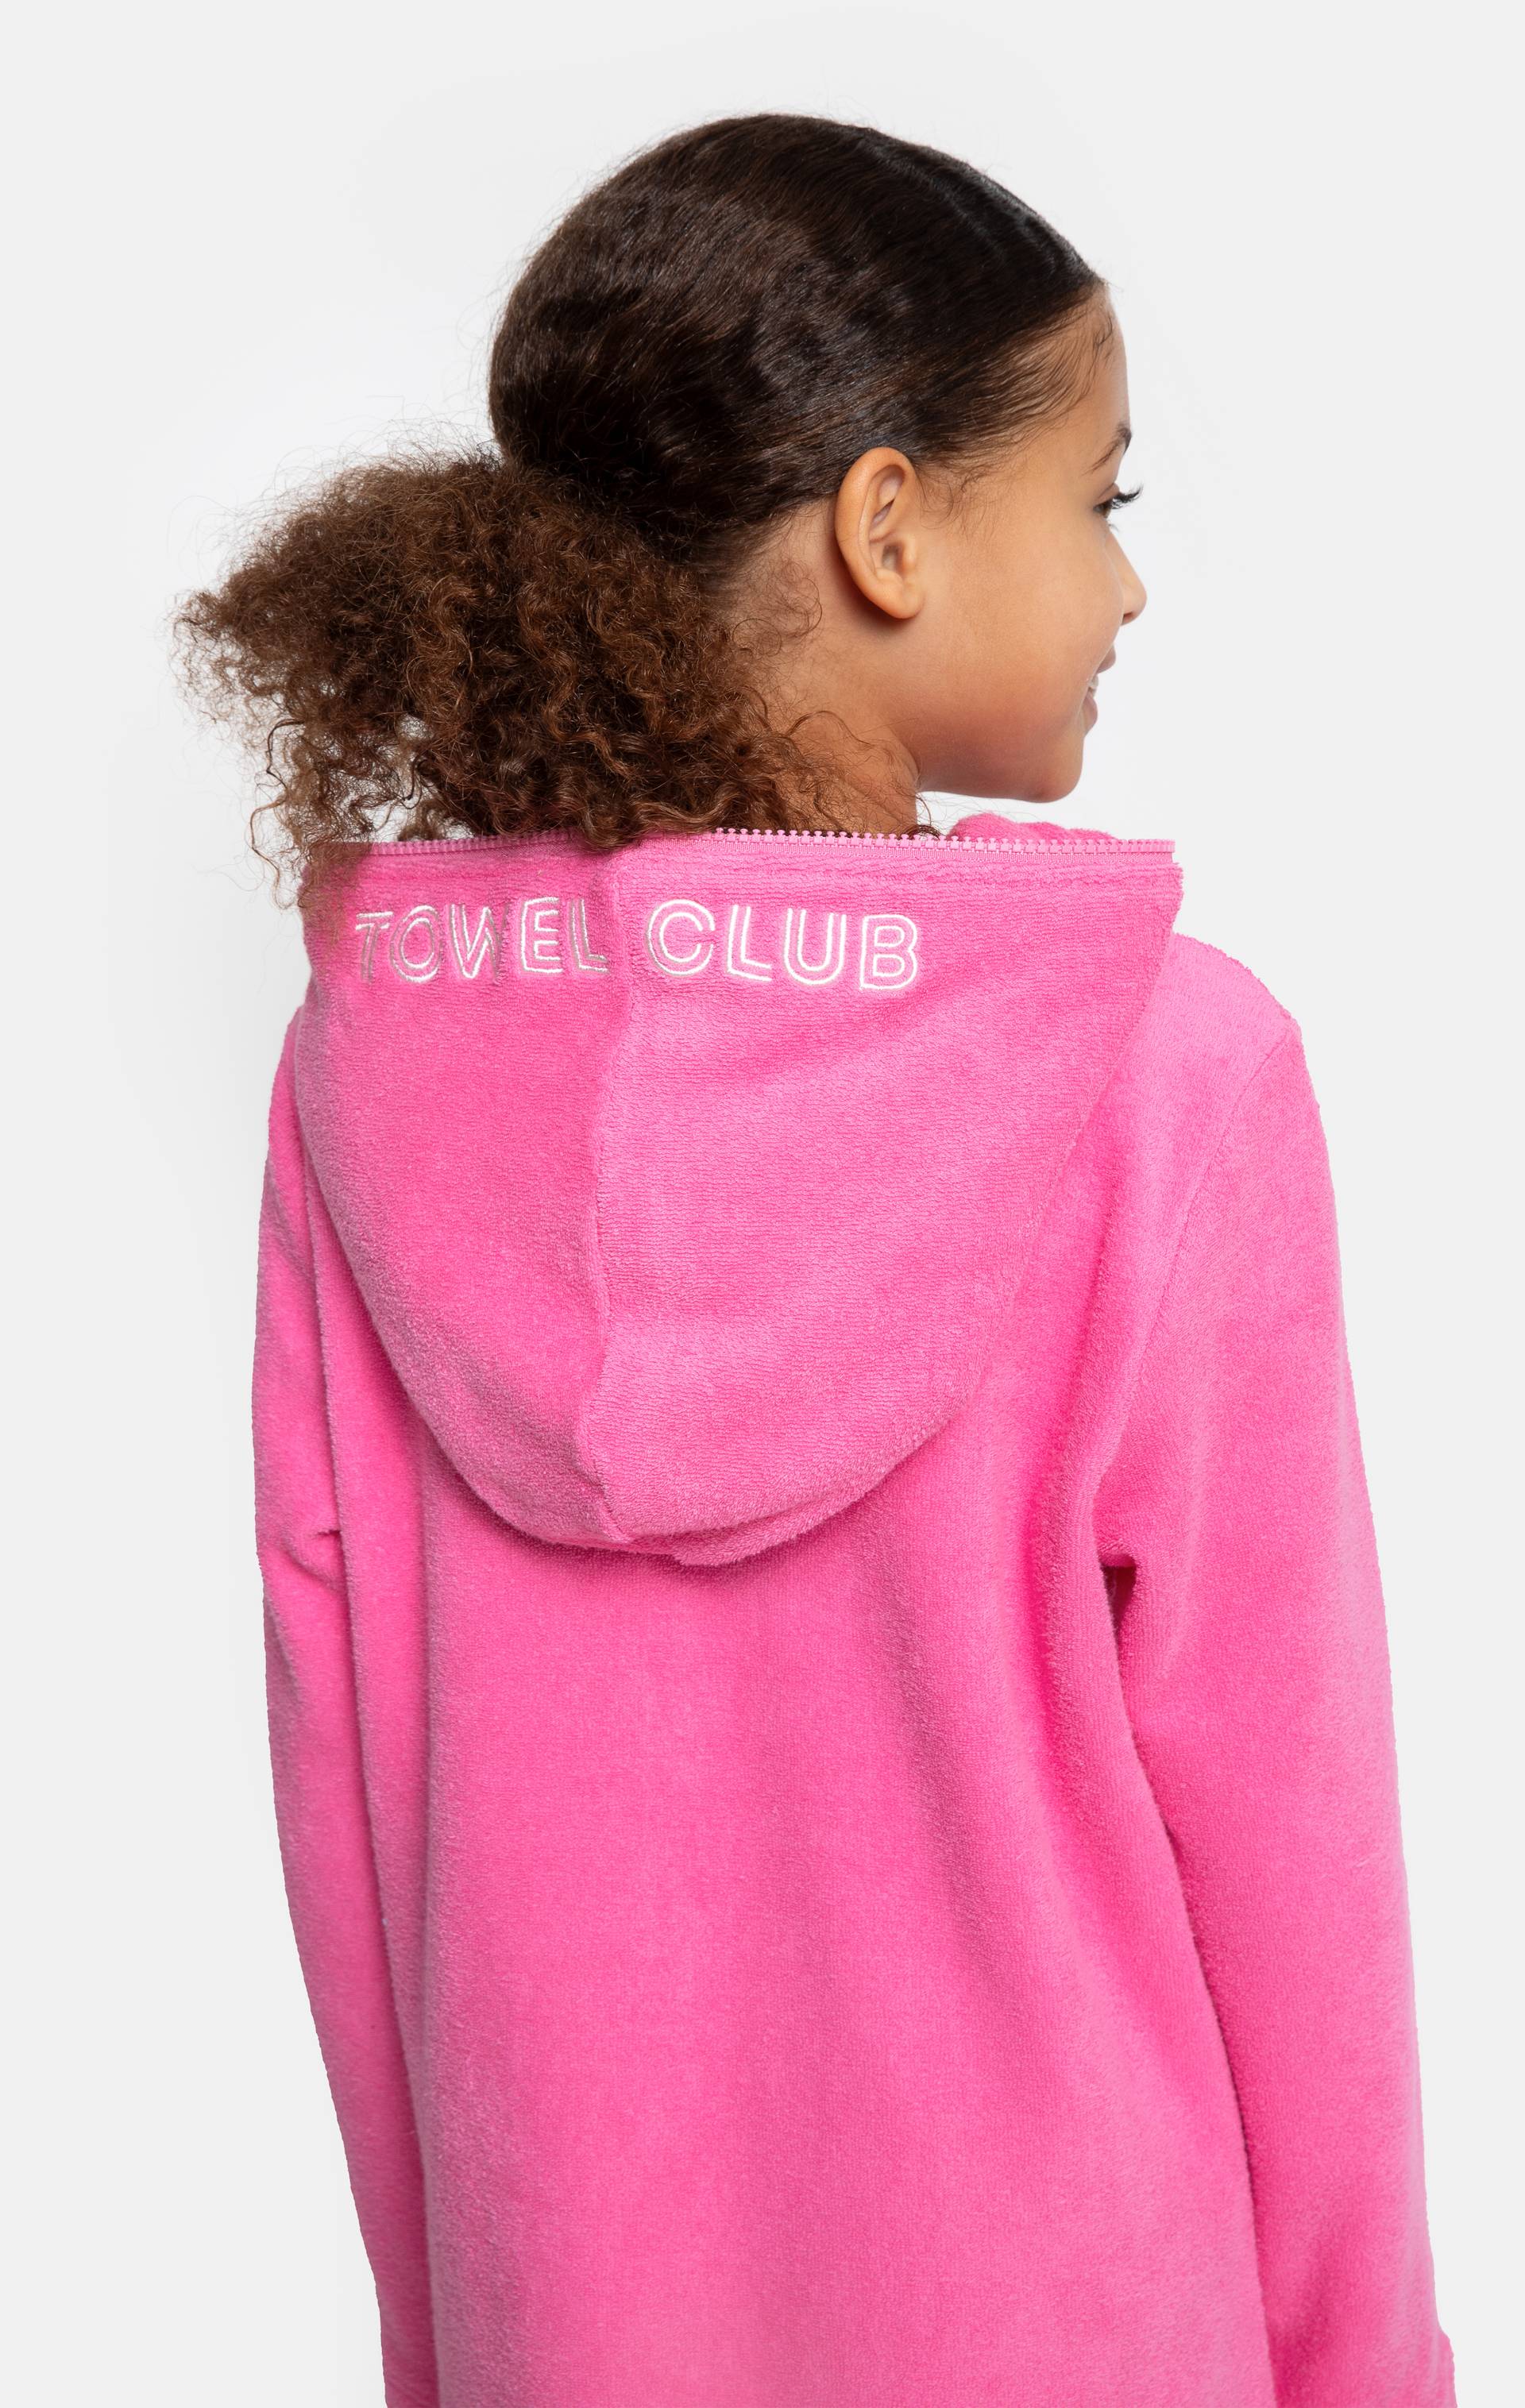 Onepiece Towel Club X Onepiece KIDS Towel Jumpsuit Pink - 5